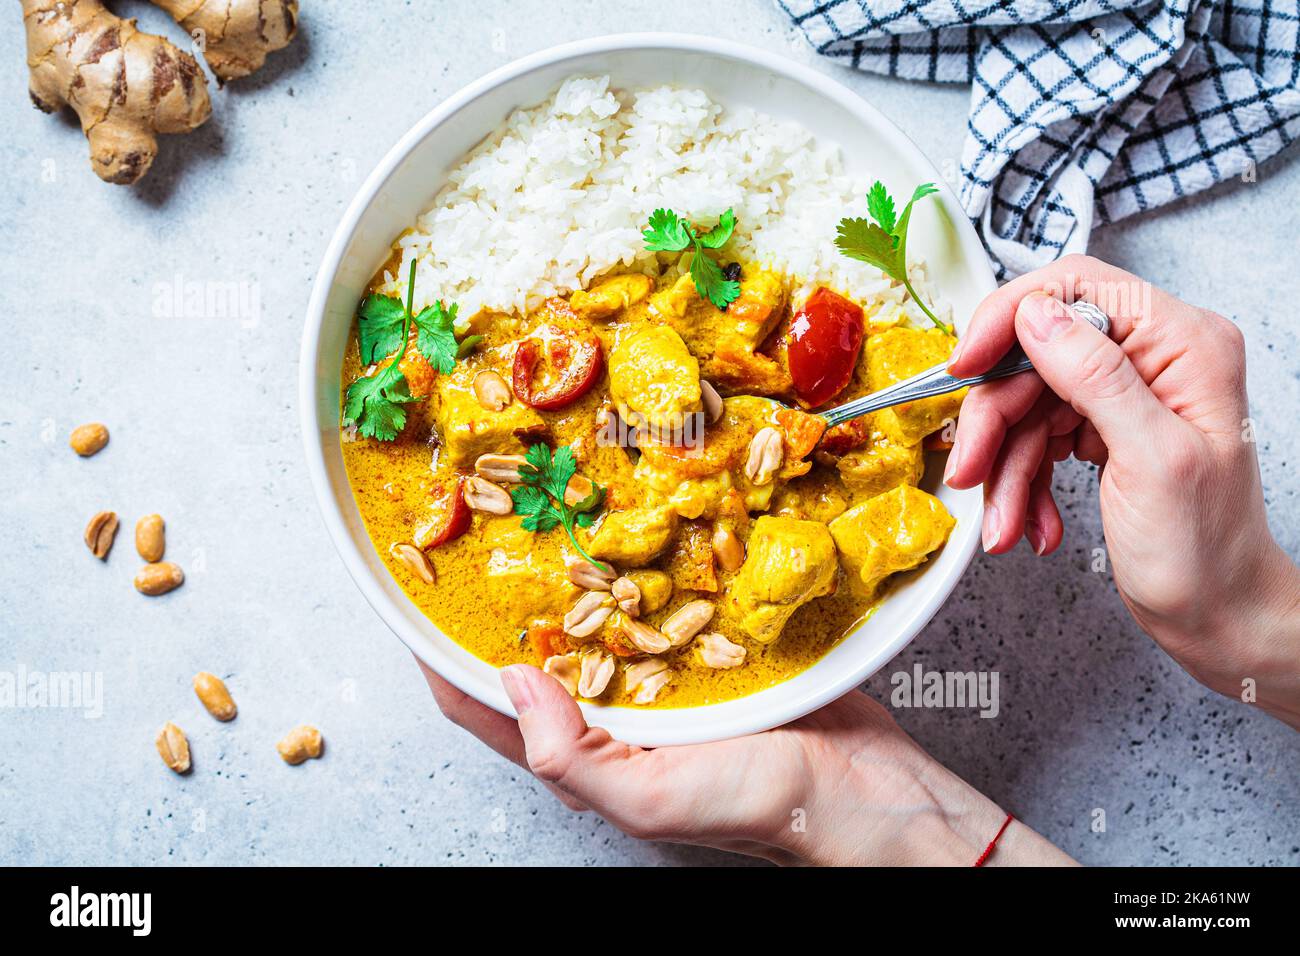 Thailändisches Hühnchen- und Erdnusscure mit Reis in einer weißen Schüssel, grauer Hintergrund, Draufsicht. Konzept der asiatischen Küche. Stockfoto